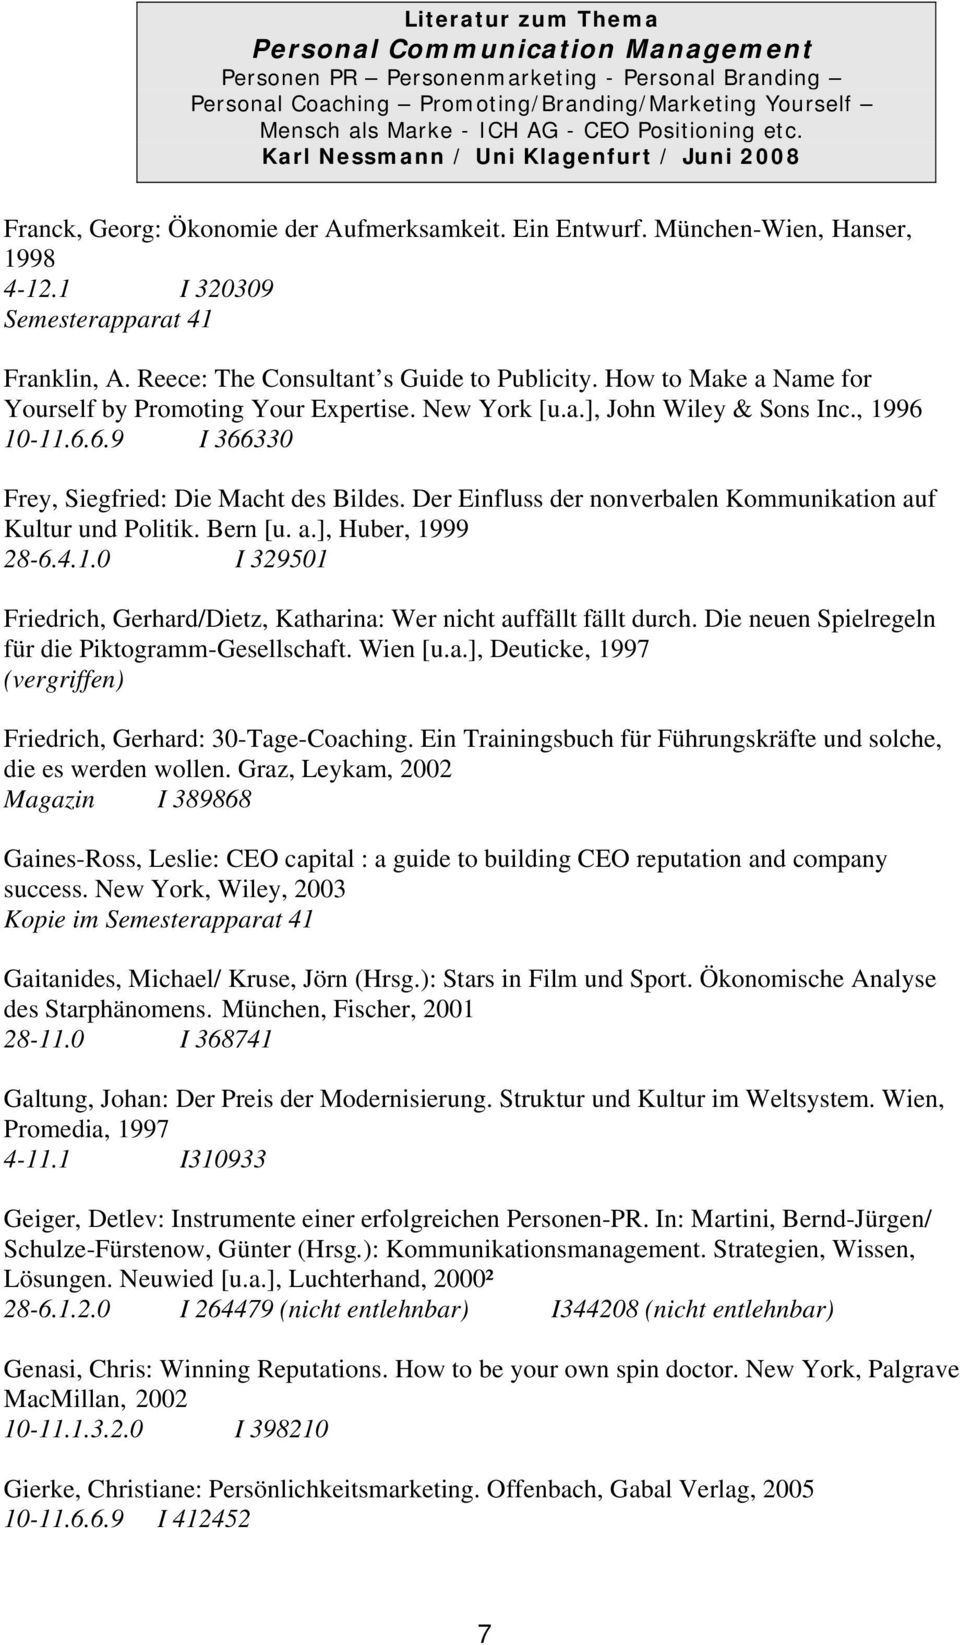 Der Einfluss der nonverbalen Kommunikation auf Kultur und Politik. Bern [u. a.], Huber, 1999 28-6.4.1.0 I 329501 Friedrich, Gerhard/Dietz, Katharina: Wer nicht auffällt fällt durch.